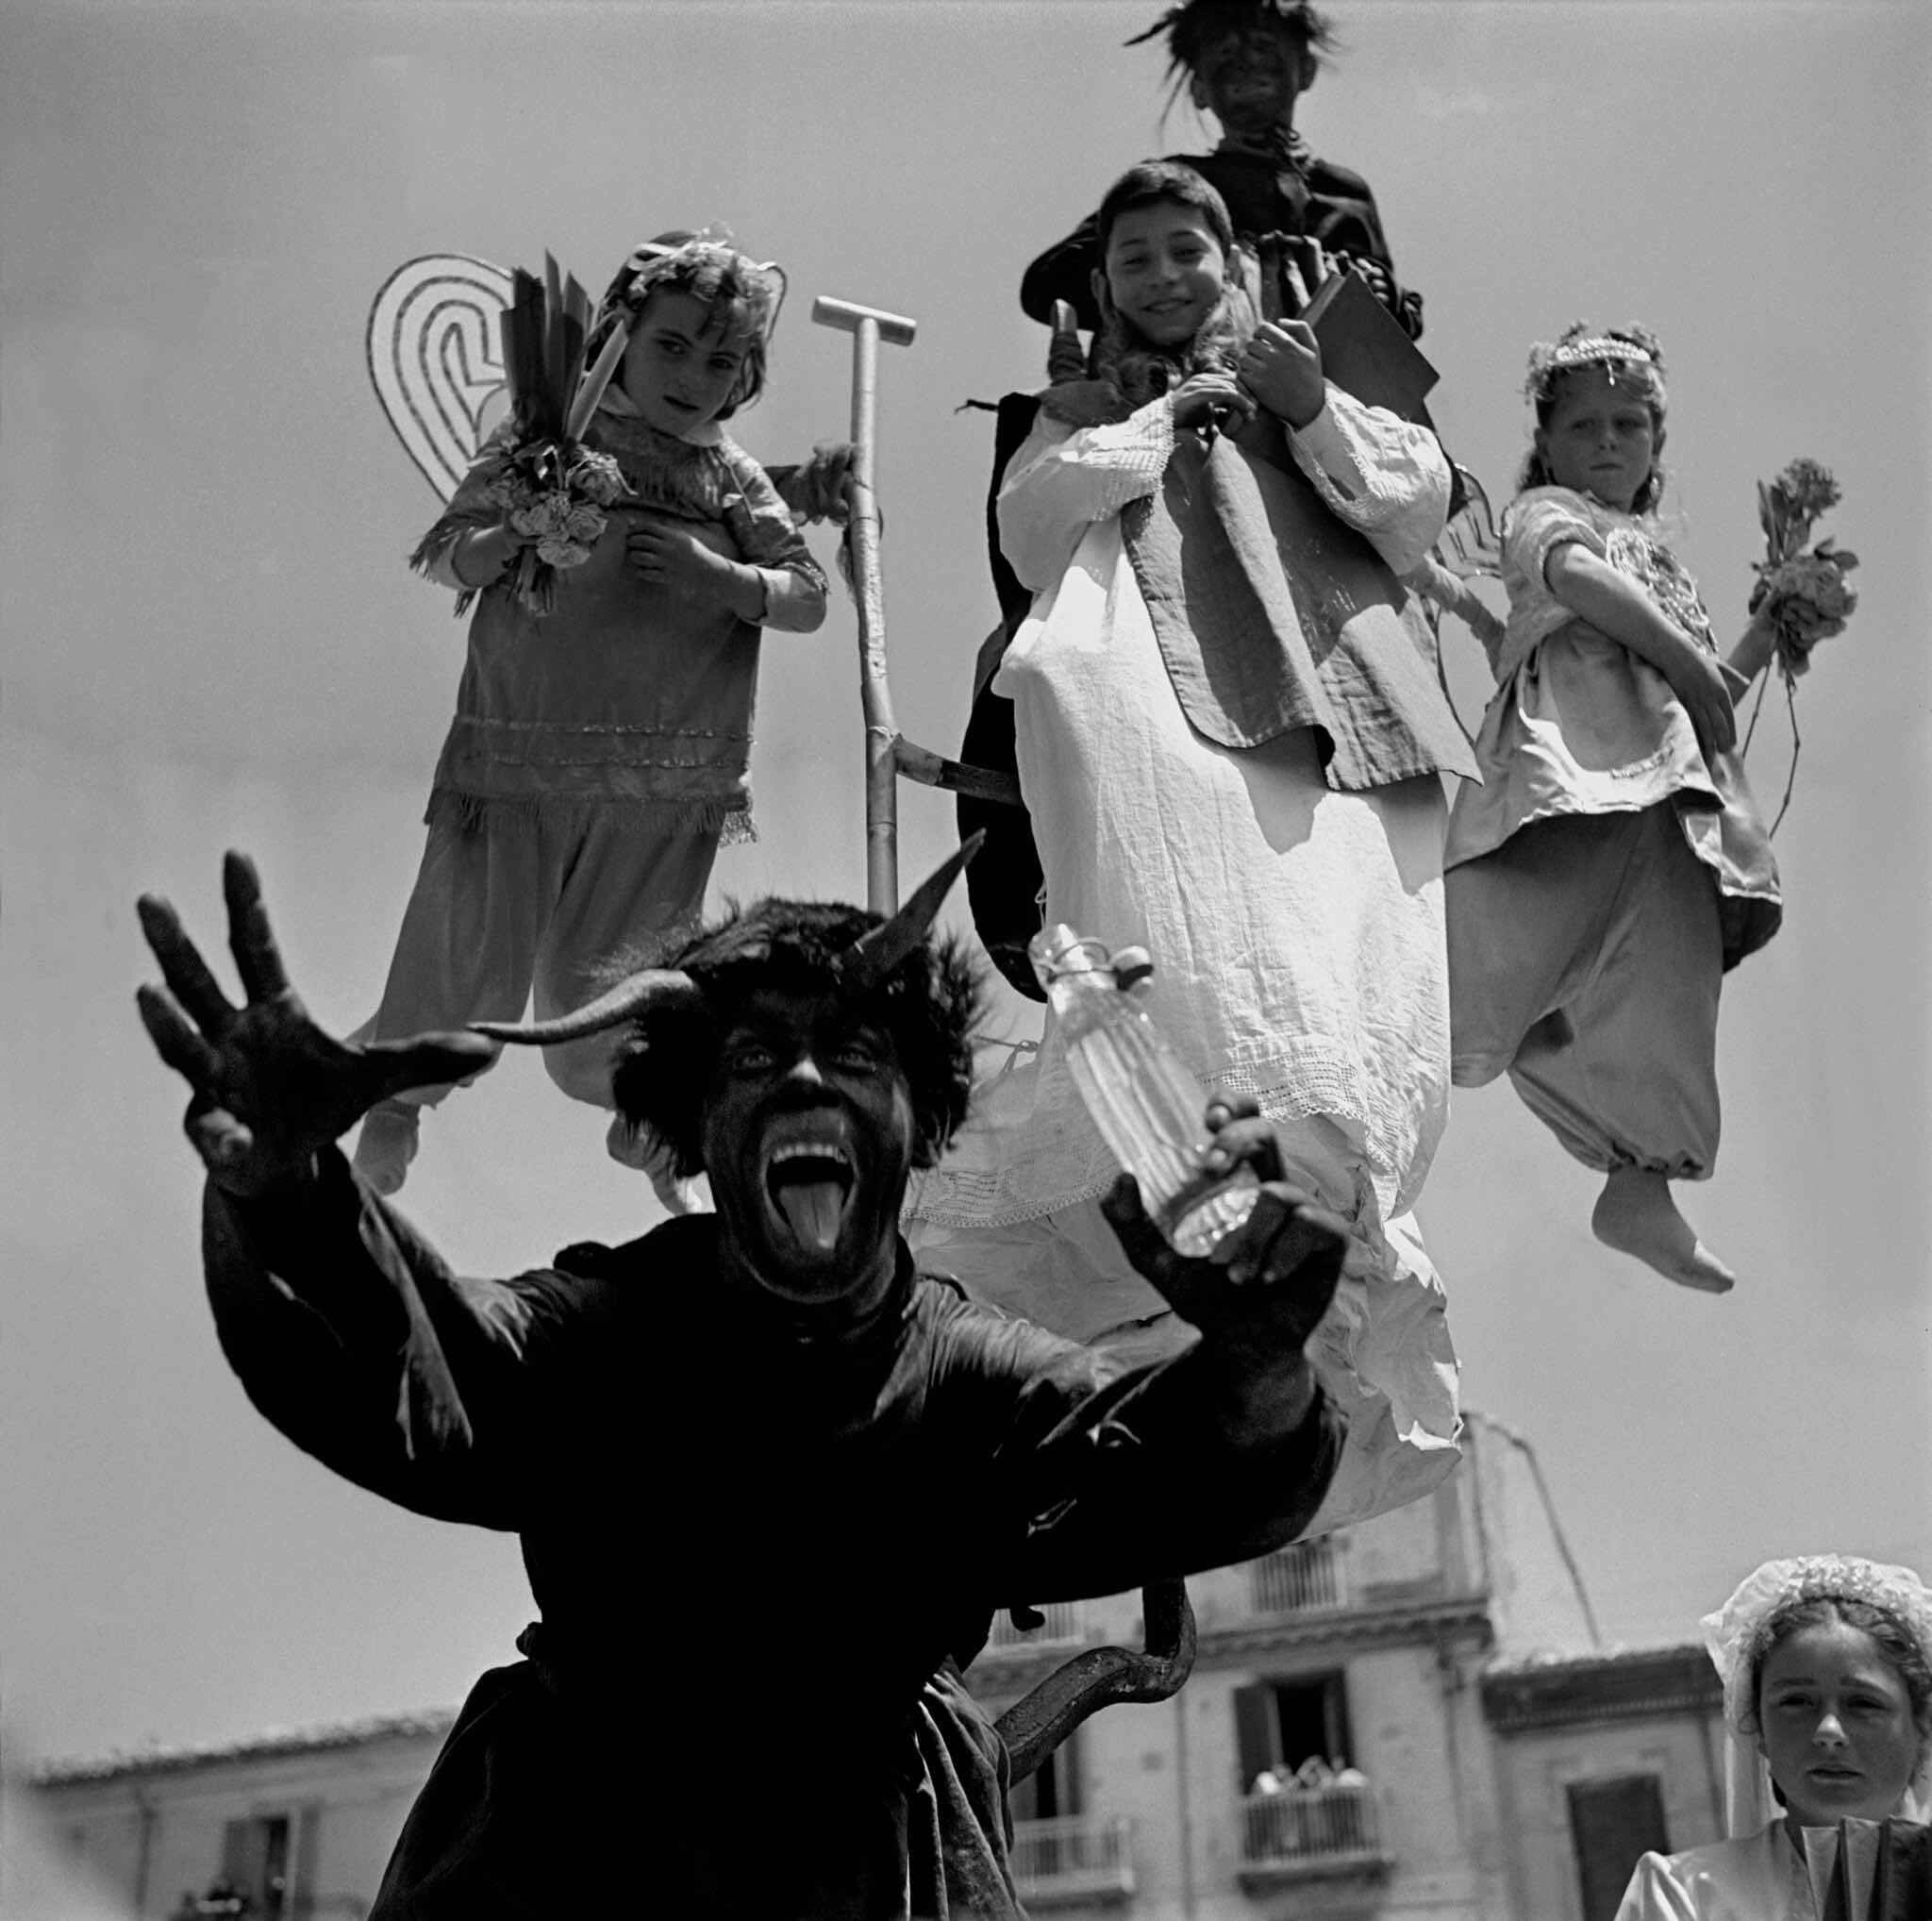 Кампобассо, Италия, шествие, 1950 год. Фотограф Франк Хорват